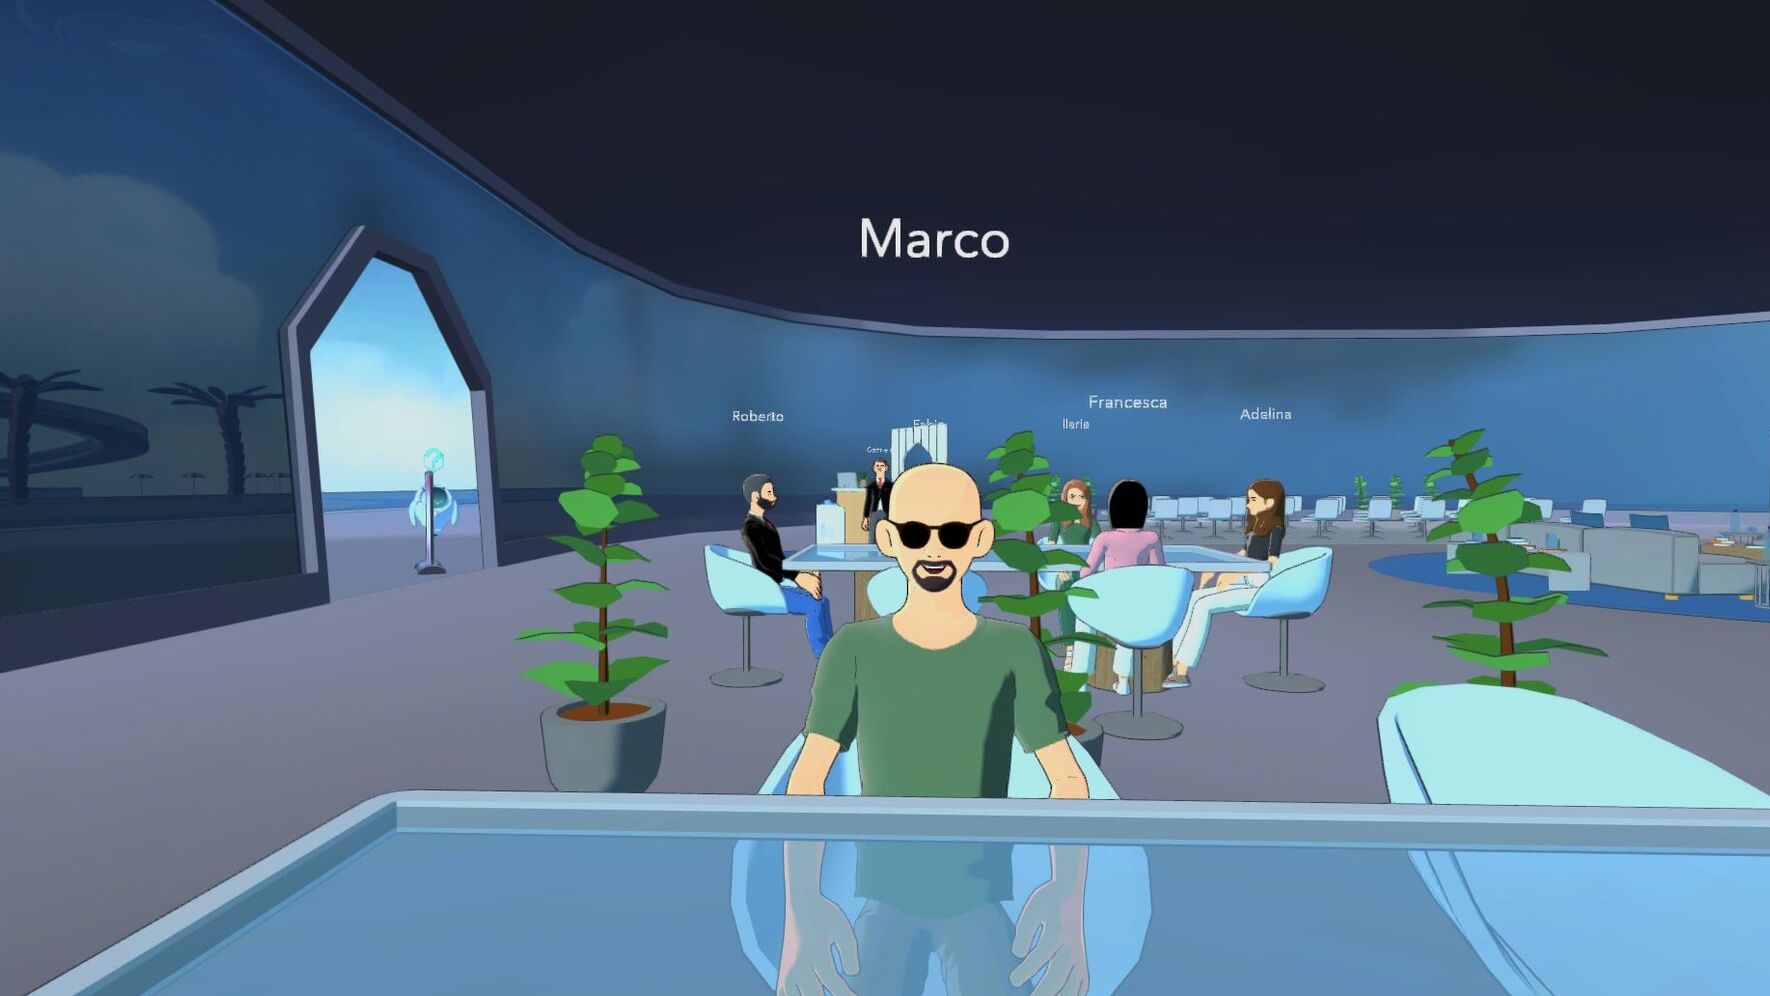 Uno screenshot del Metaverso realizzato dalla società Coderblock di Palermo per l'ANGI